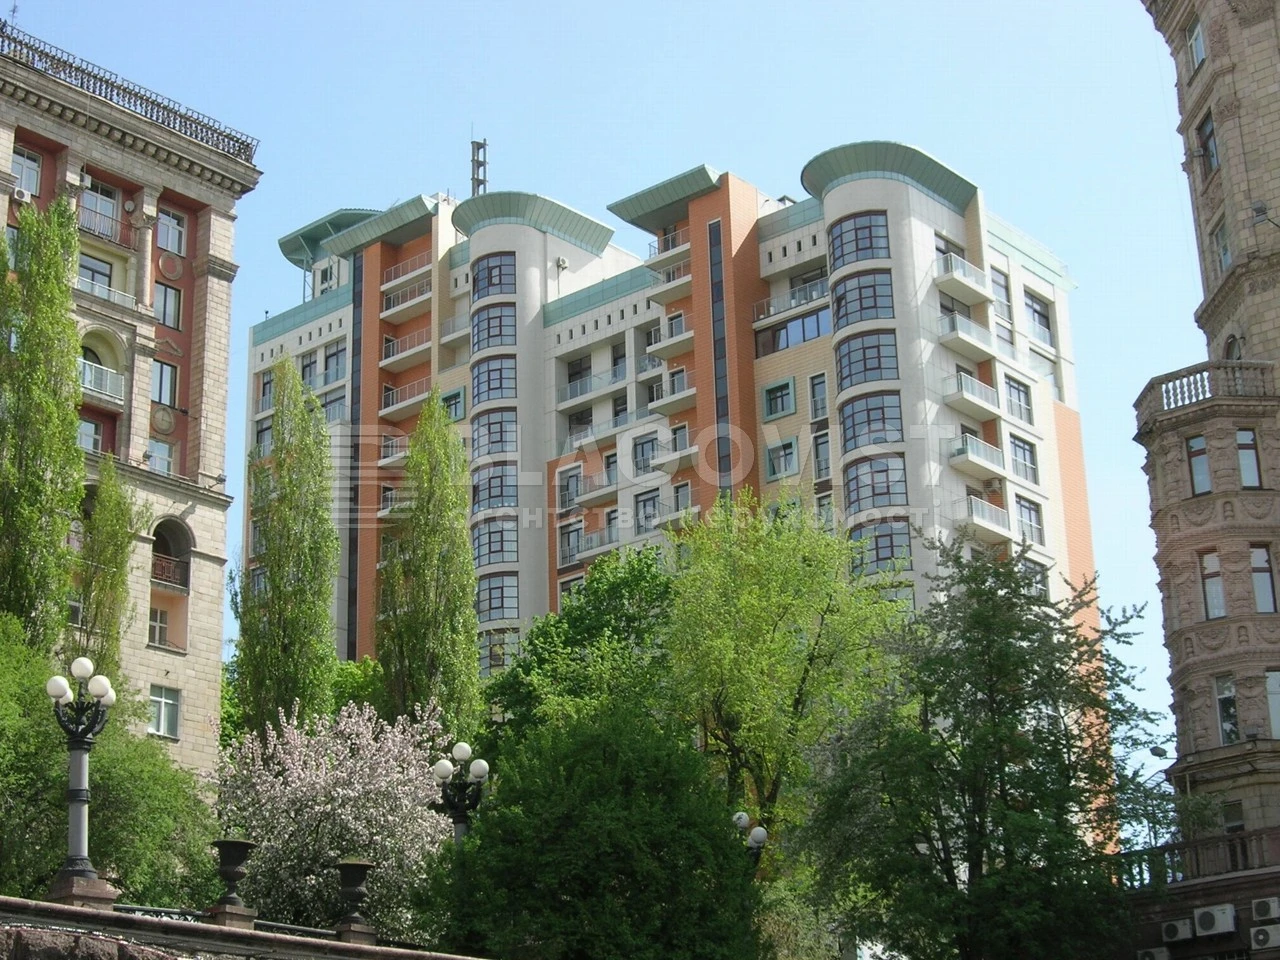 Продается квартира 3-х комнатная Крещатик ул. 27б Киев 